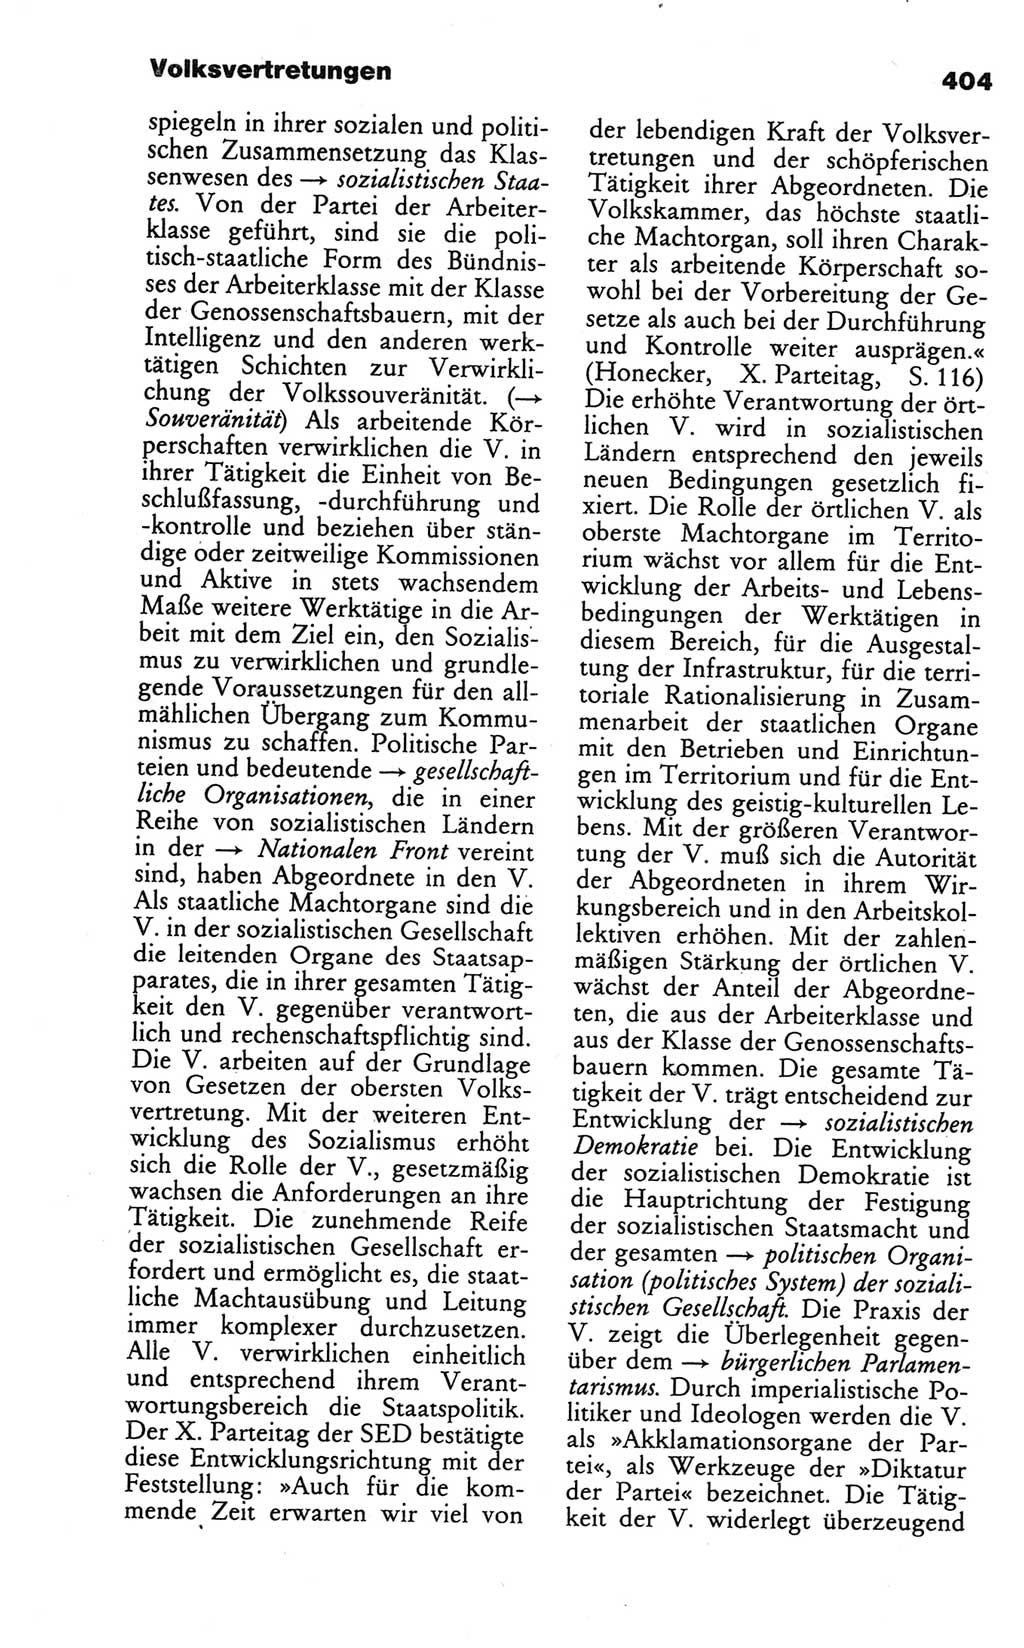 Wörterbuch des wissenschaftlichen Kommunismus [Deutsche Demokratische Republik (DDR)] 1984, Seite 404 (Wb. wiss. Komm. DDR 1984, S. 404)